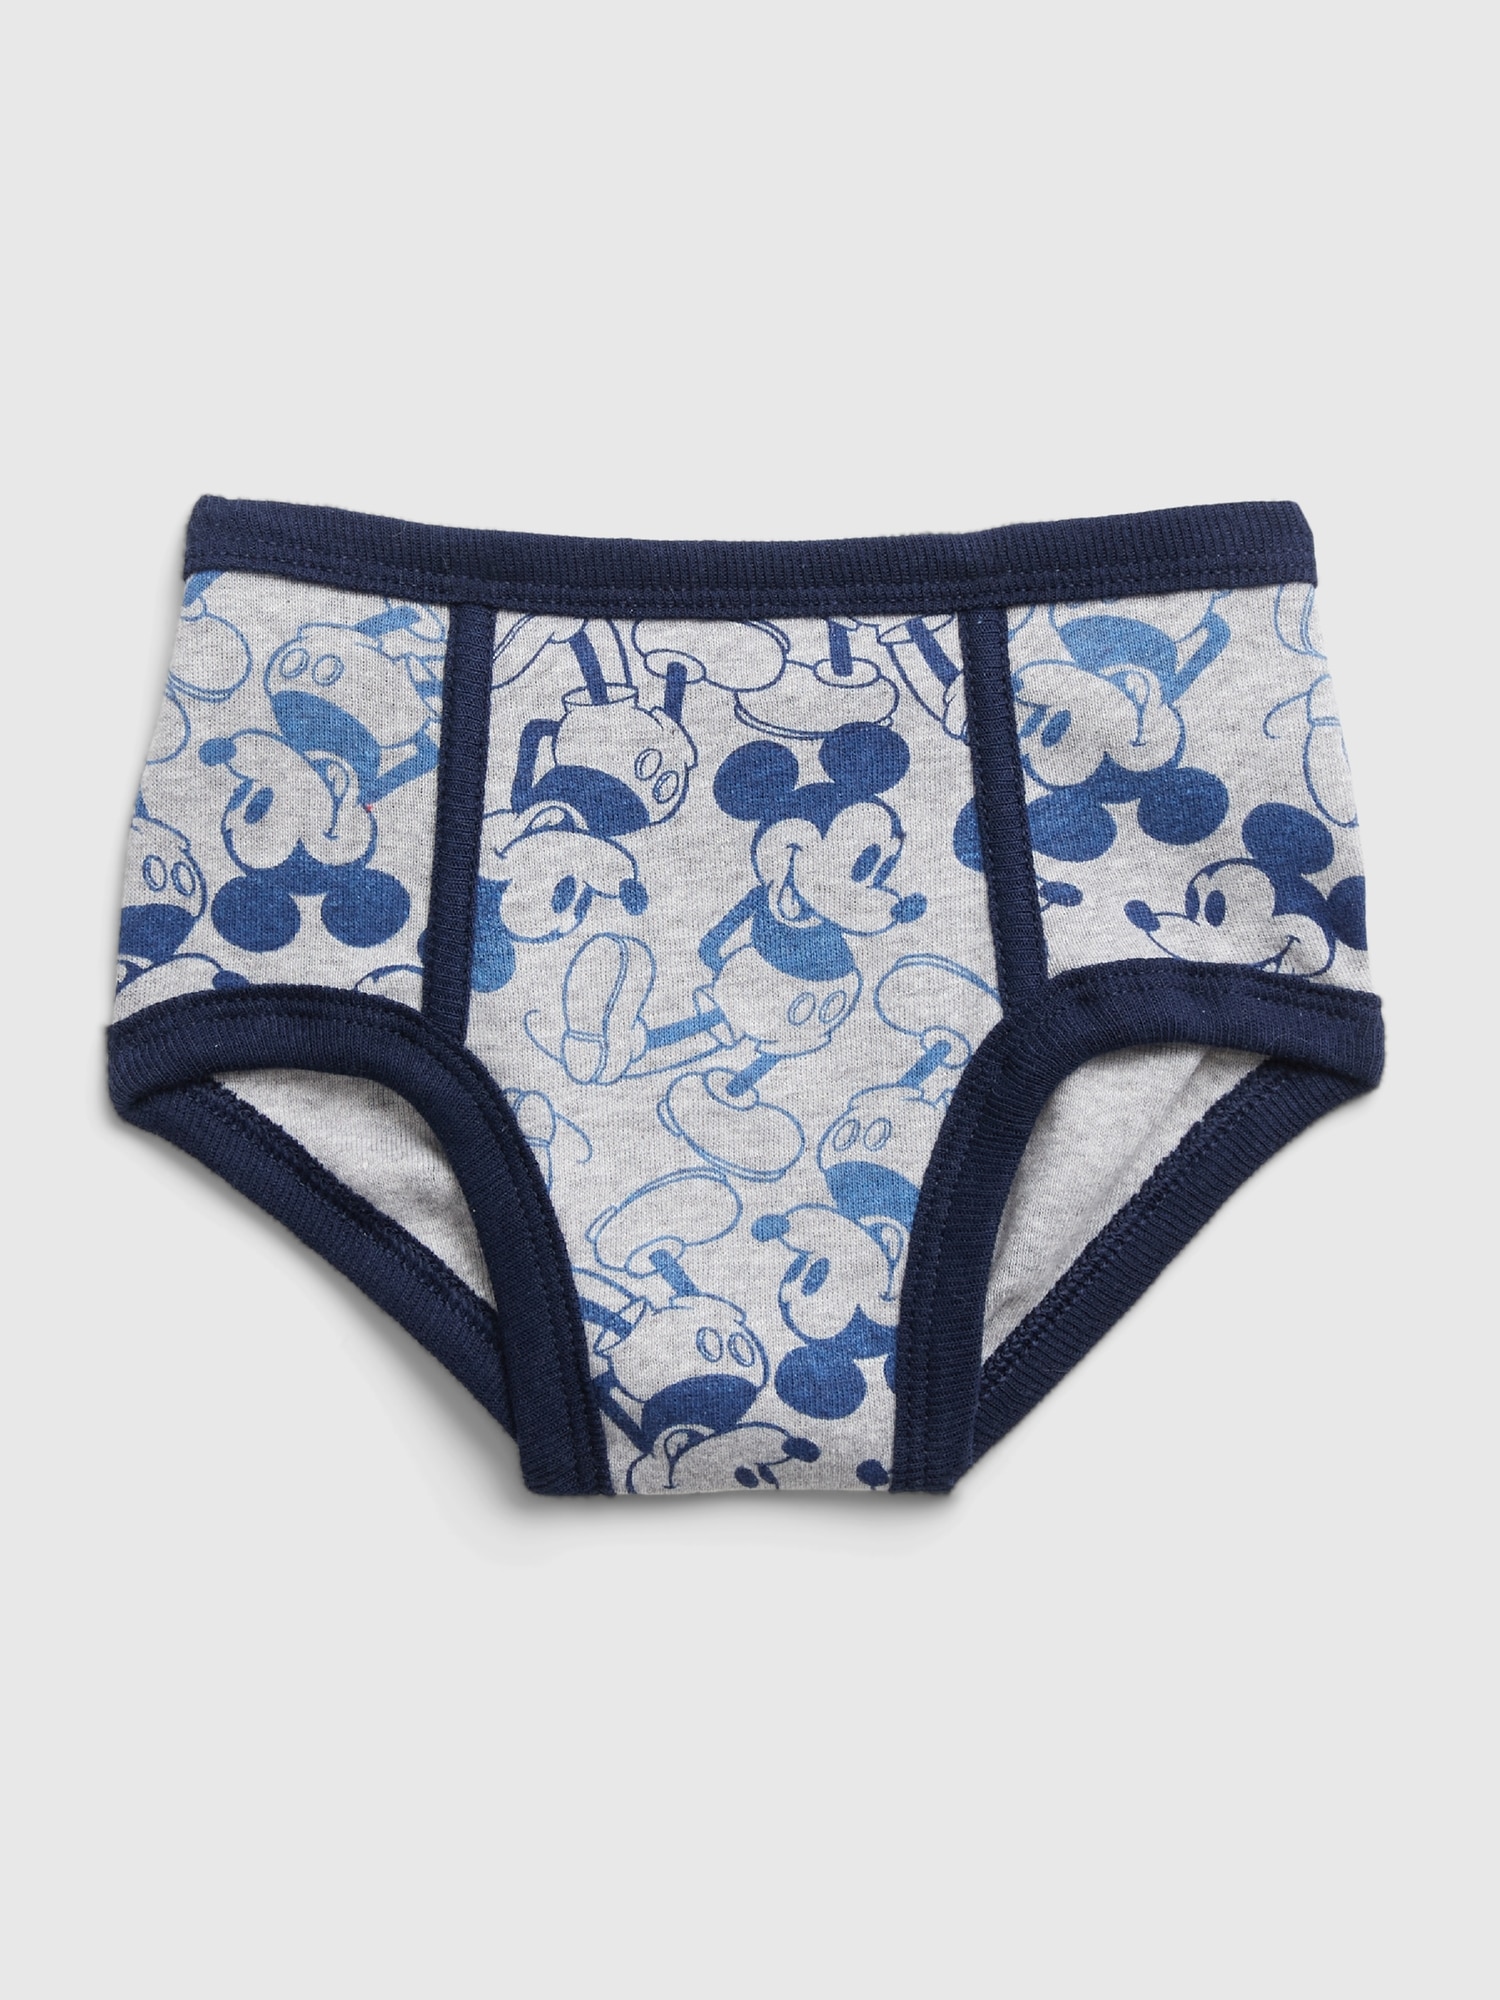 Disney Minnie Mouse Cotton 7 Undies Panties Underwear Toddler Girls 2t/3t  for sale online